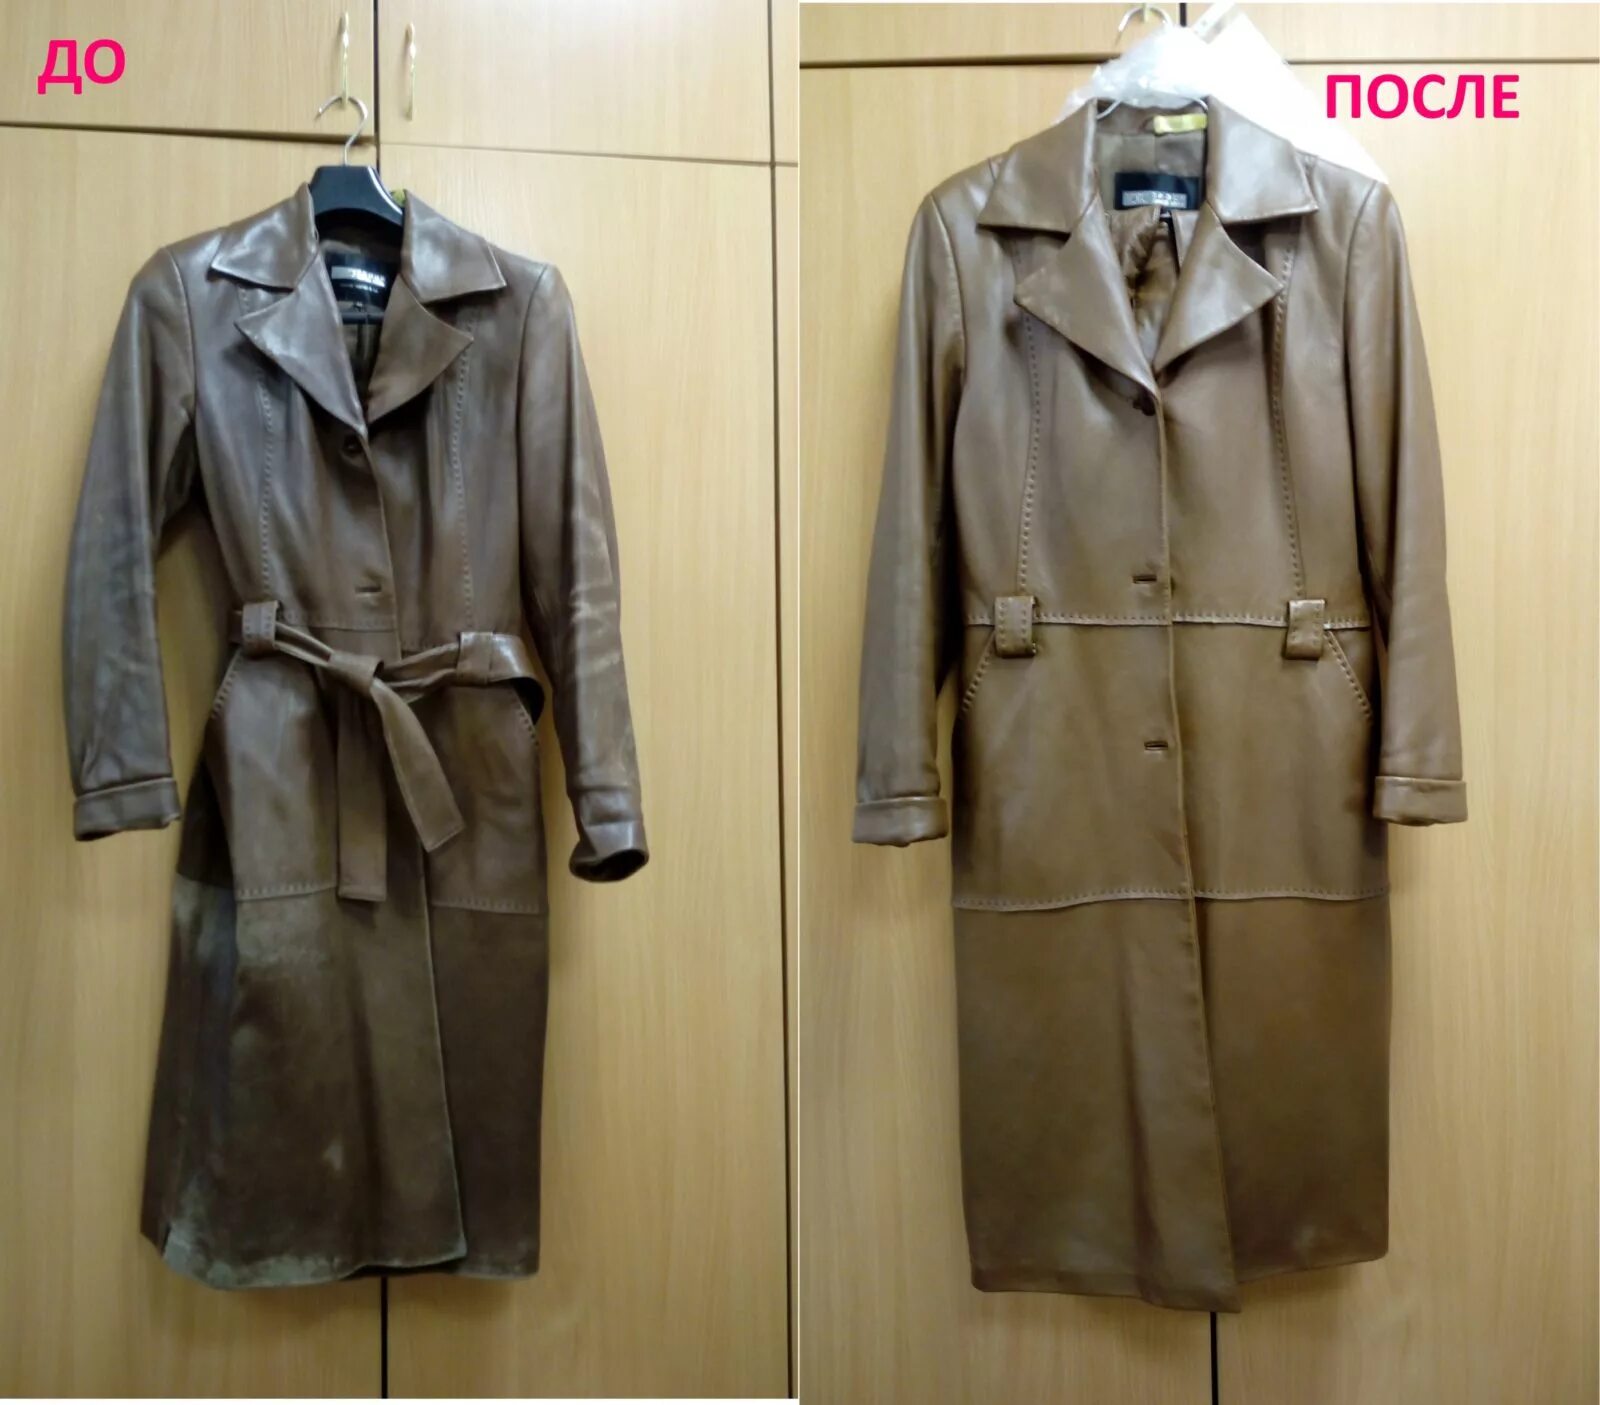 Химчистка пальто в москве. Химчистка пальто до и после. Покрасить кожаный плащ. Пальто после химчистки. Перекрас пальто.